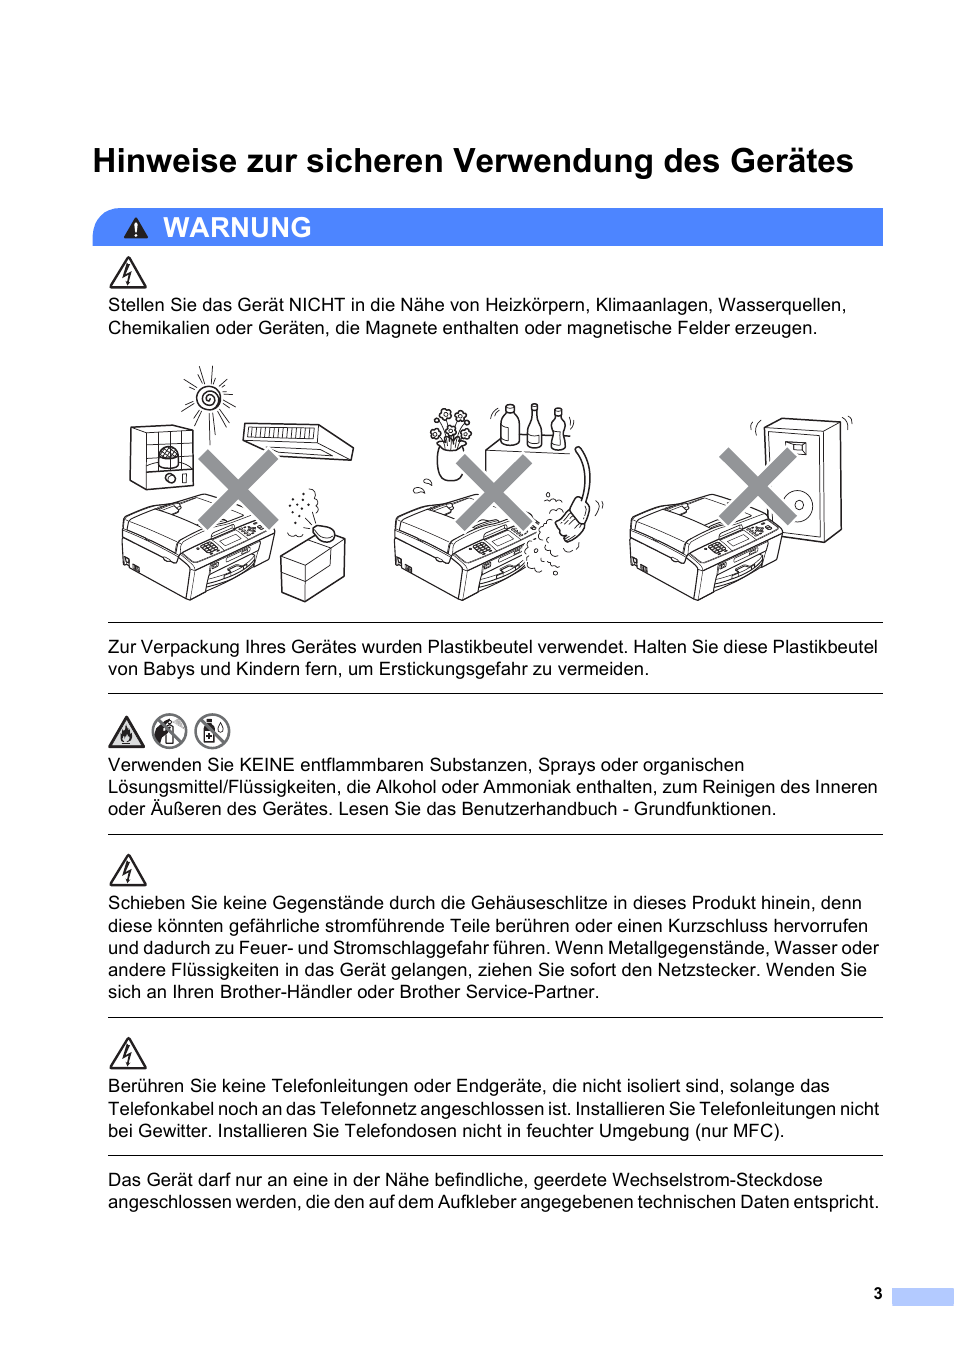 Hinweise zur sicheren verwendung des gerätes, Warnung | Brother DCP-J715W Benutzerhandbuch | Seite 3 / 14